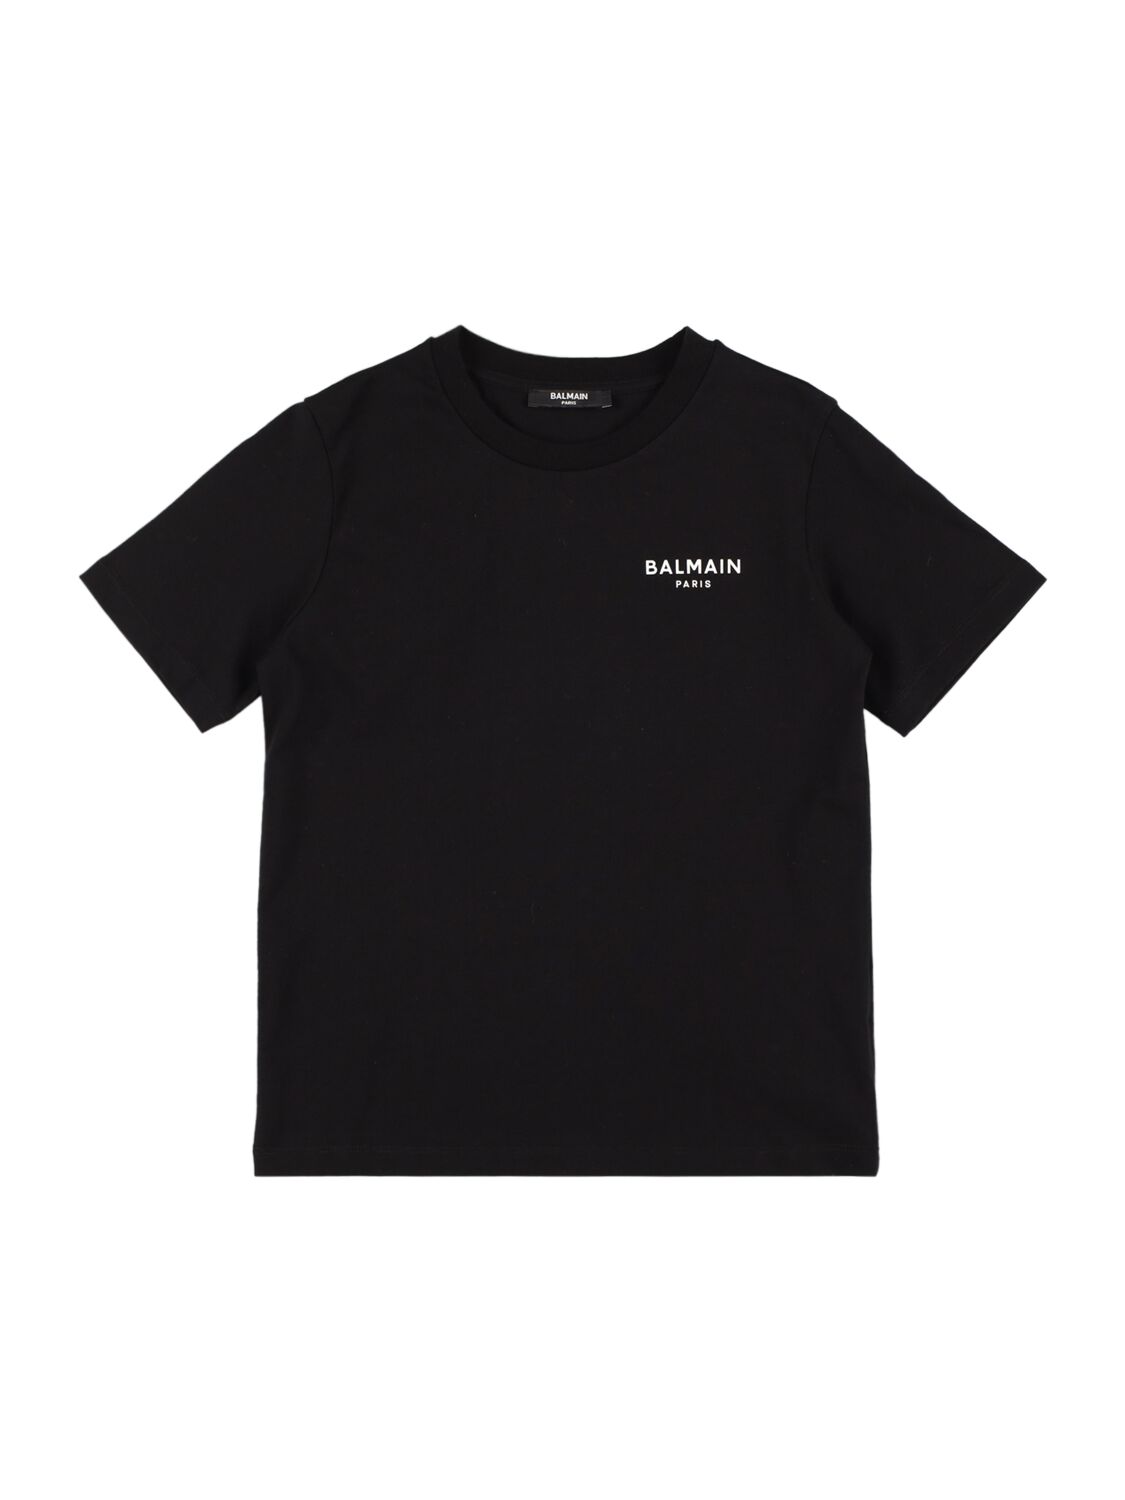 Balmain Kids' Printed Cotton Jersey T-shirt In Black,white